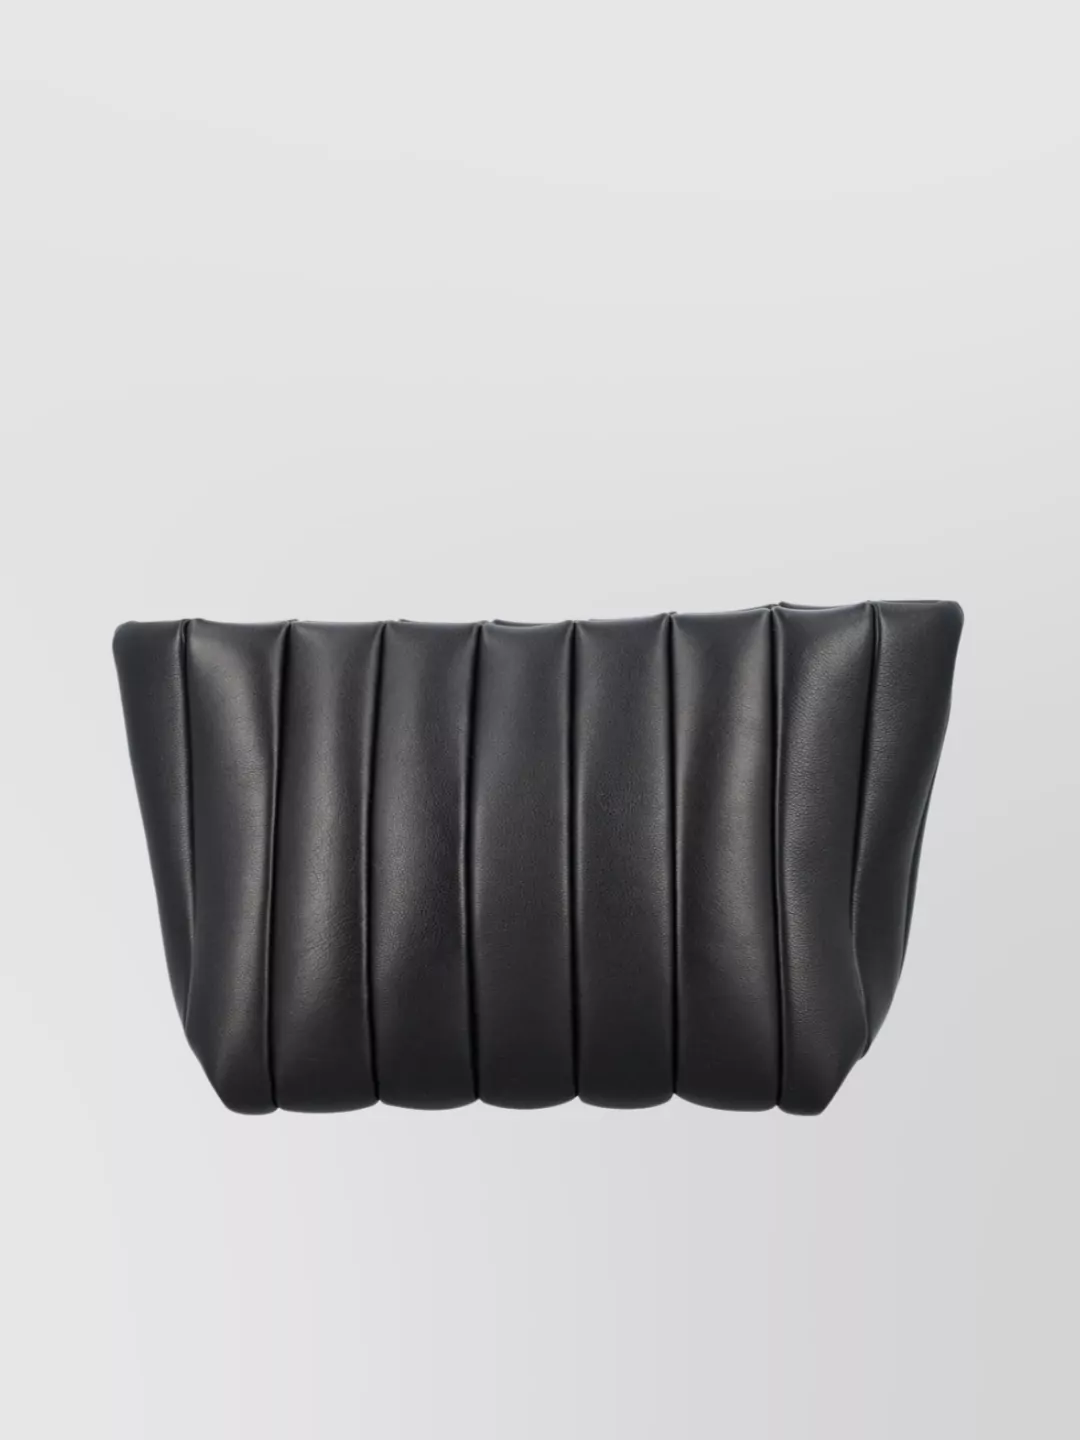 Maeden Quilted Rectangular Soft Texture Clutch In Black